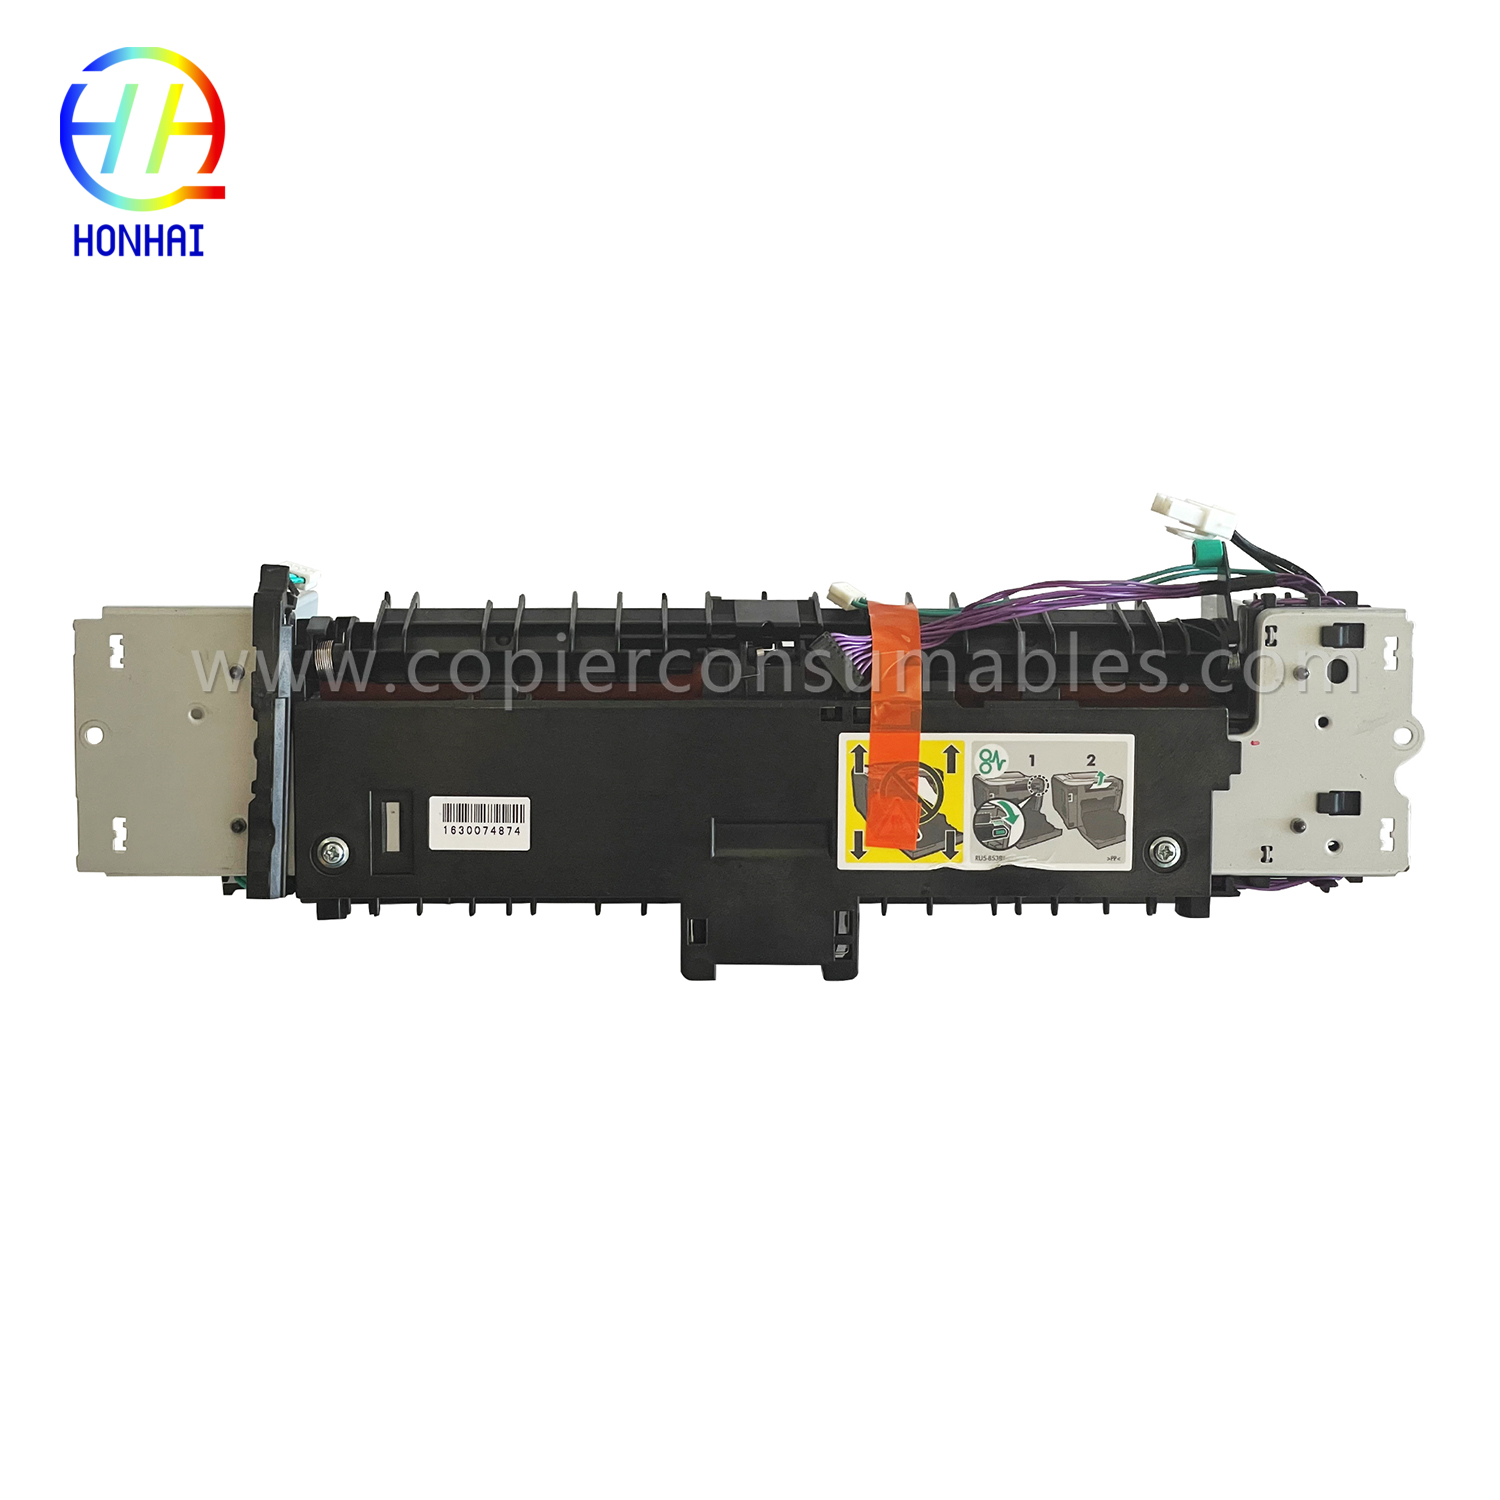 Fuser Unit for HP Laserjet PRO 400 Color Mfp M475dn M475dw (RM2-5478-000)